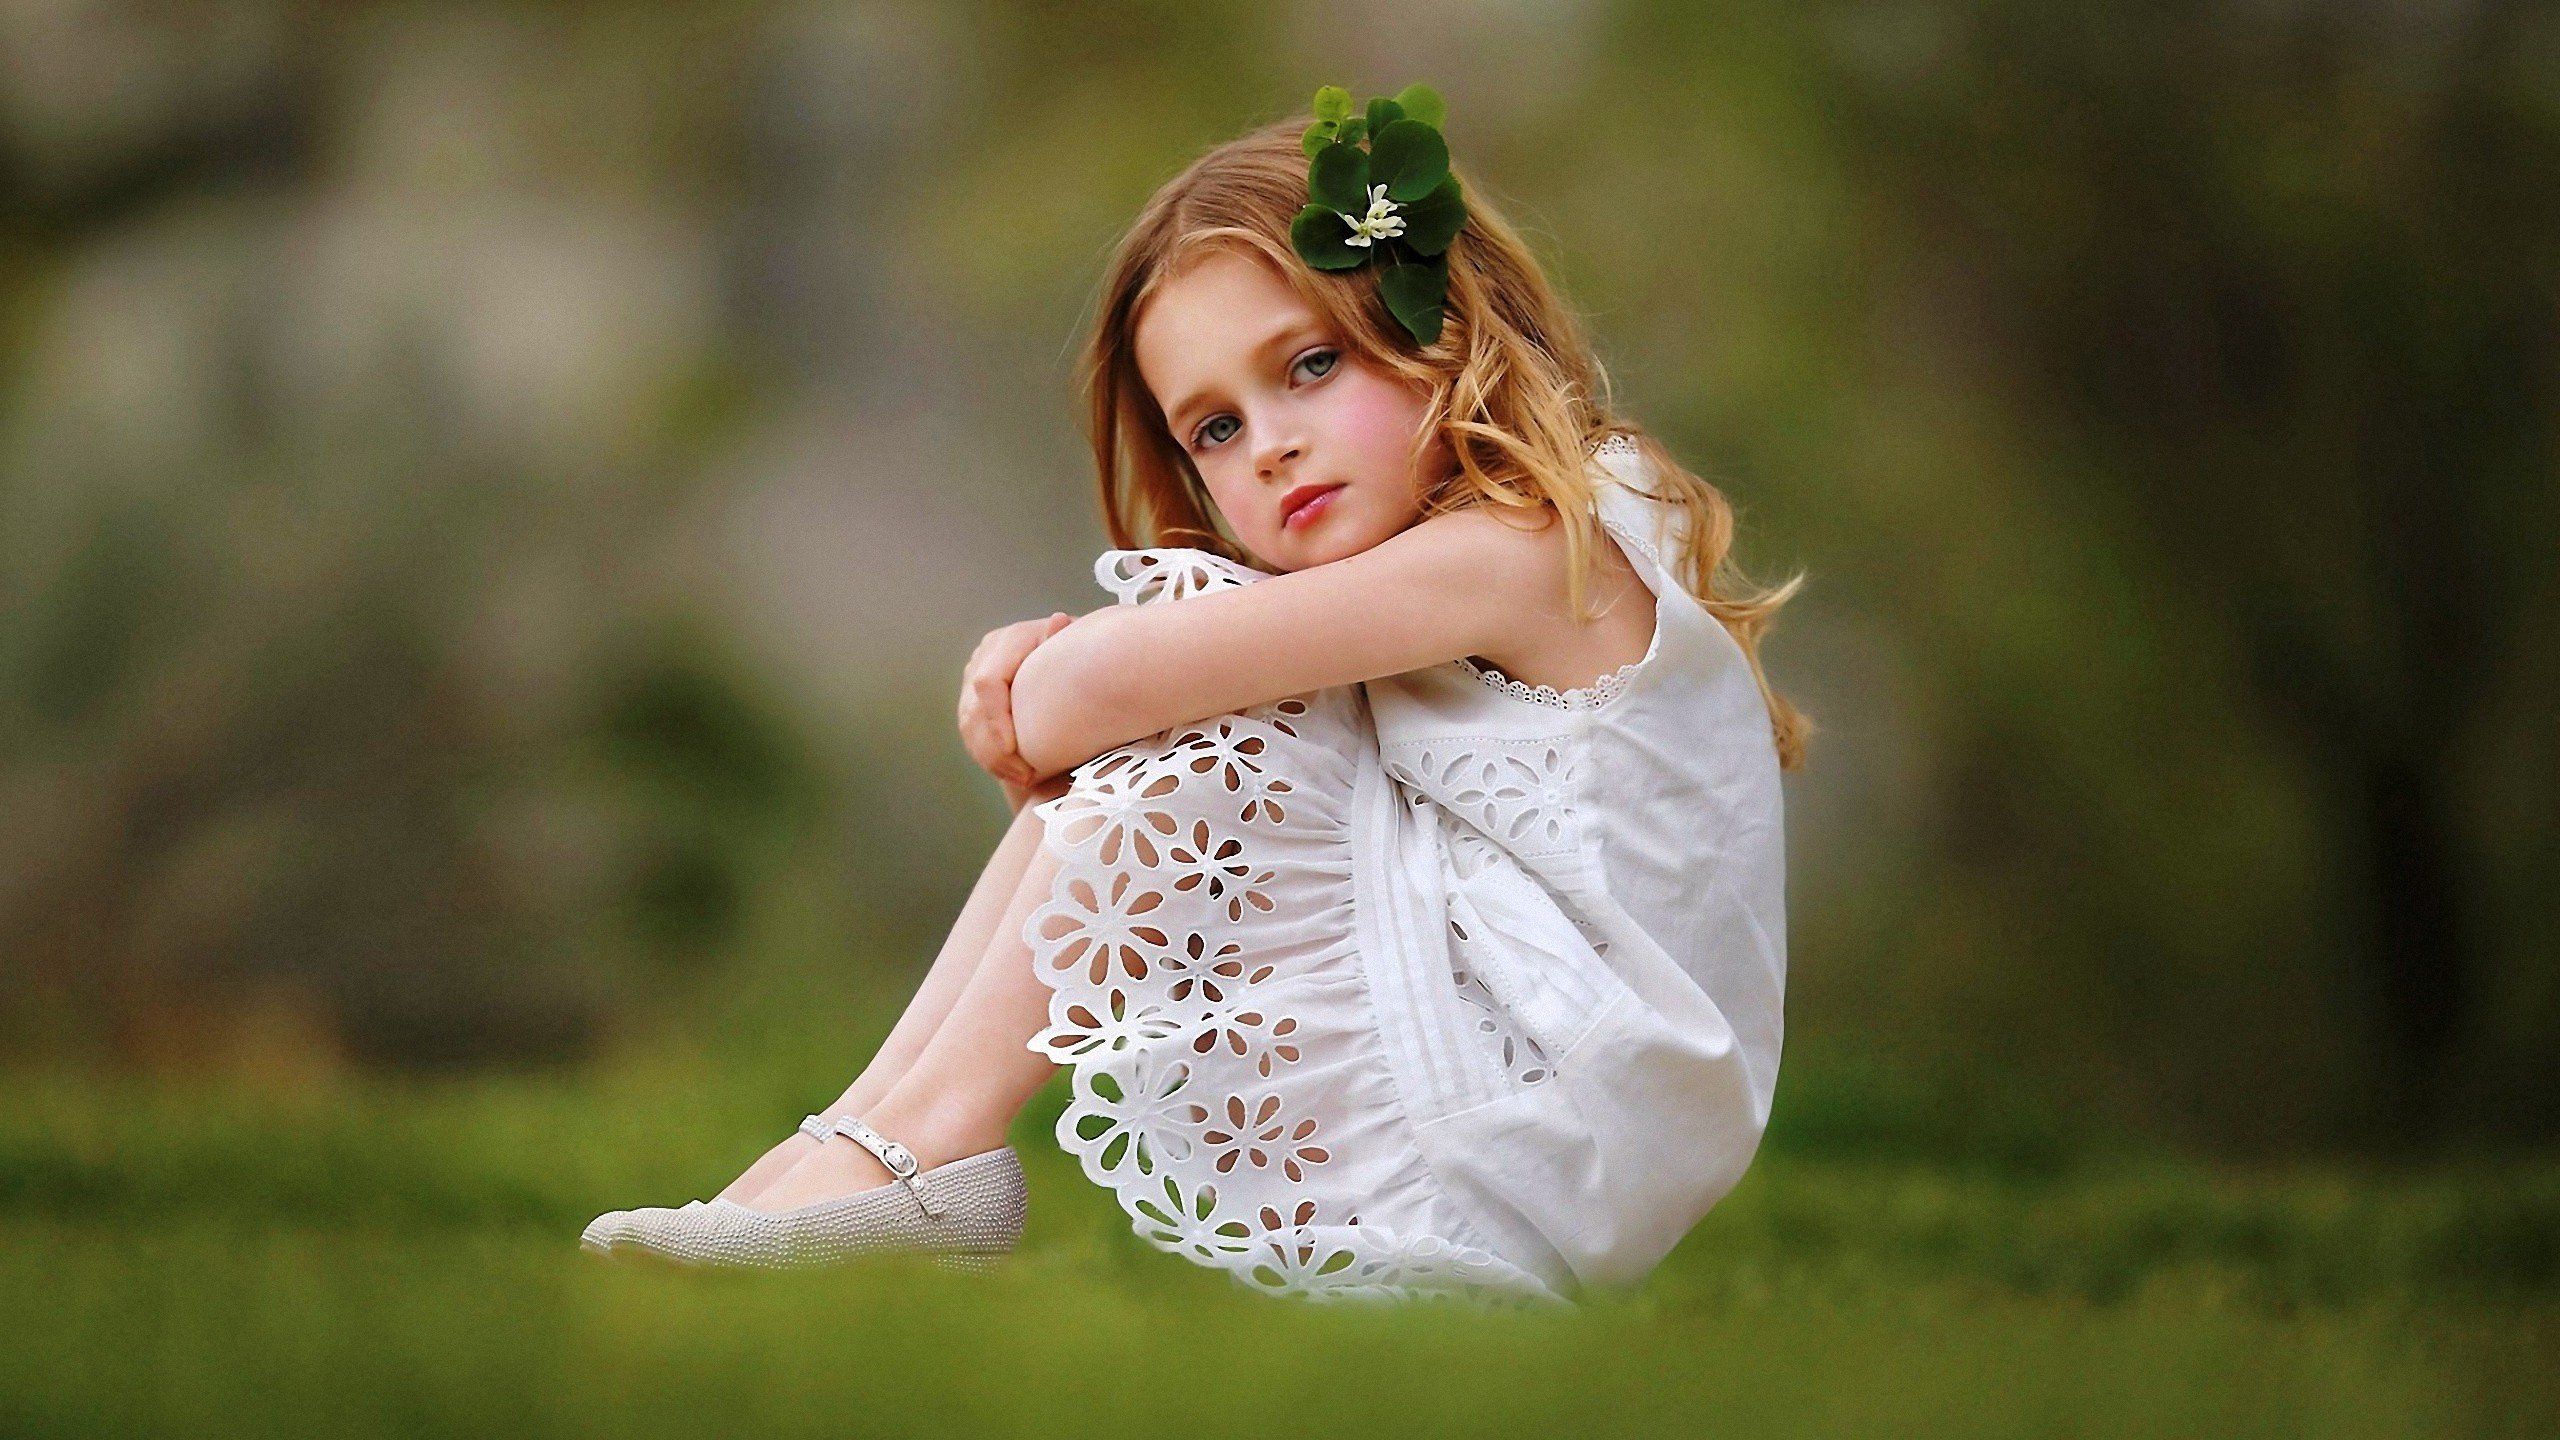 Little girls models tabu. Белое платье для девочки. Маленькие девчонки. Фотосессия в белом платье на природе. Девочка в платье сидит.